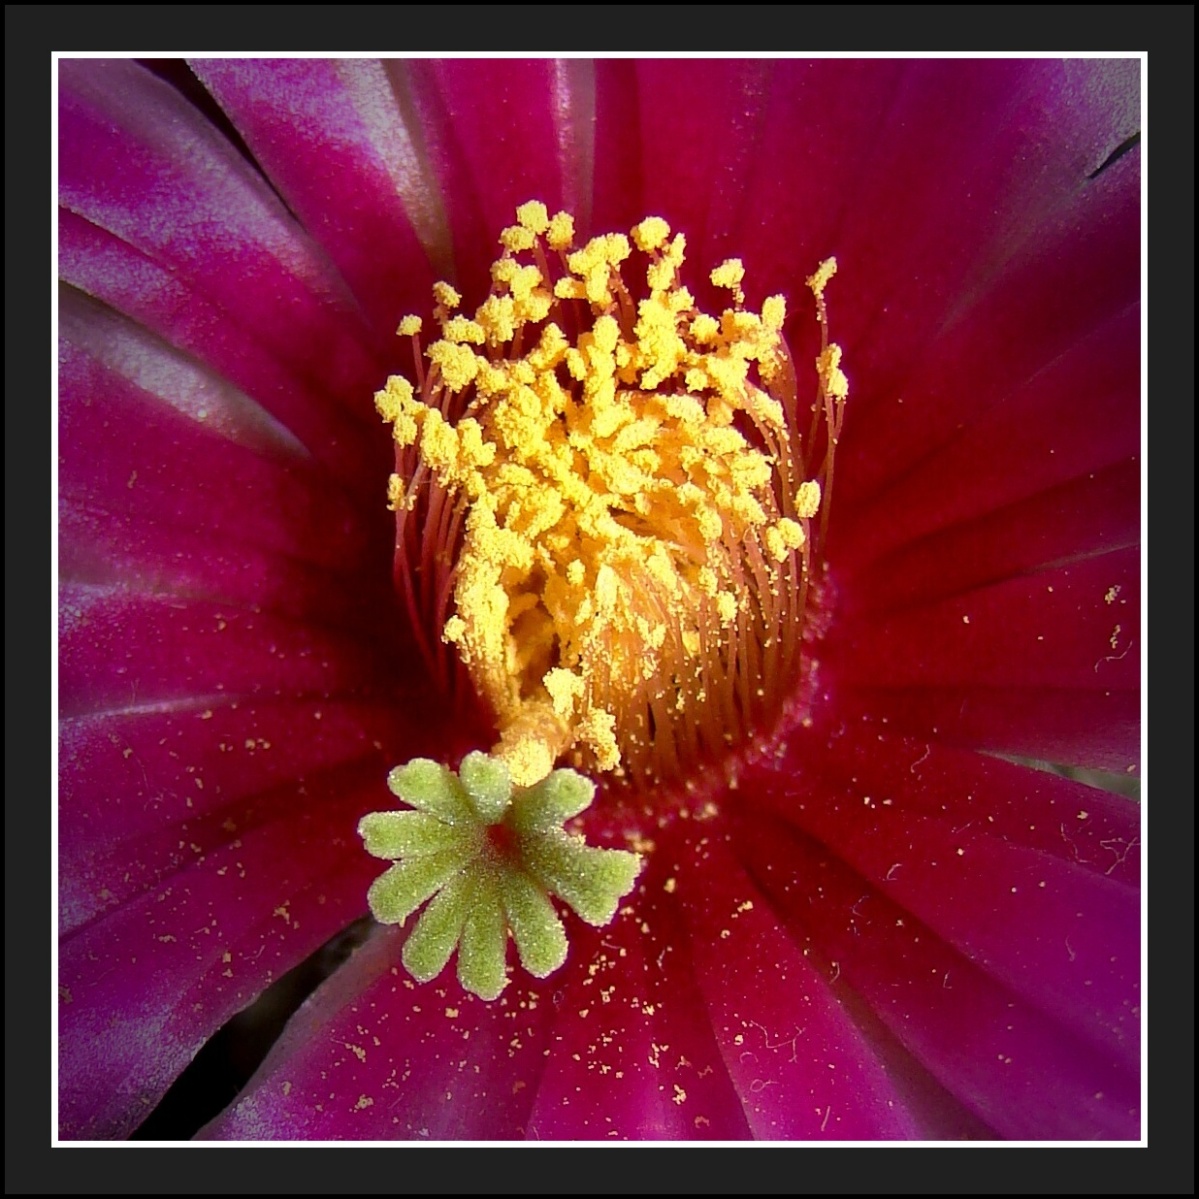 Kaktusový květ